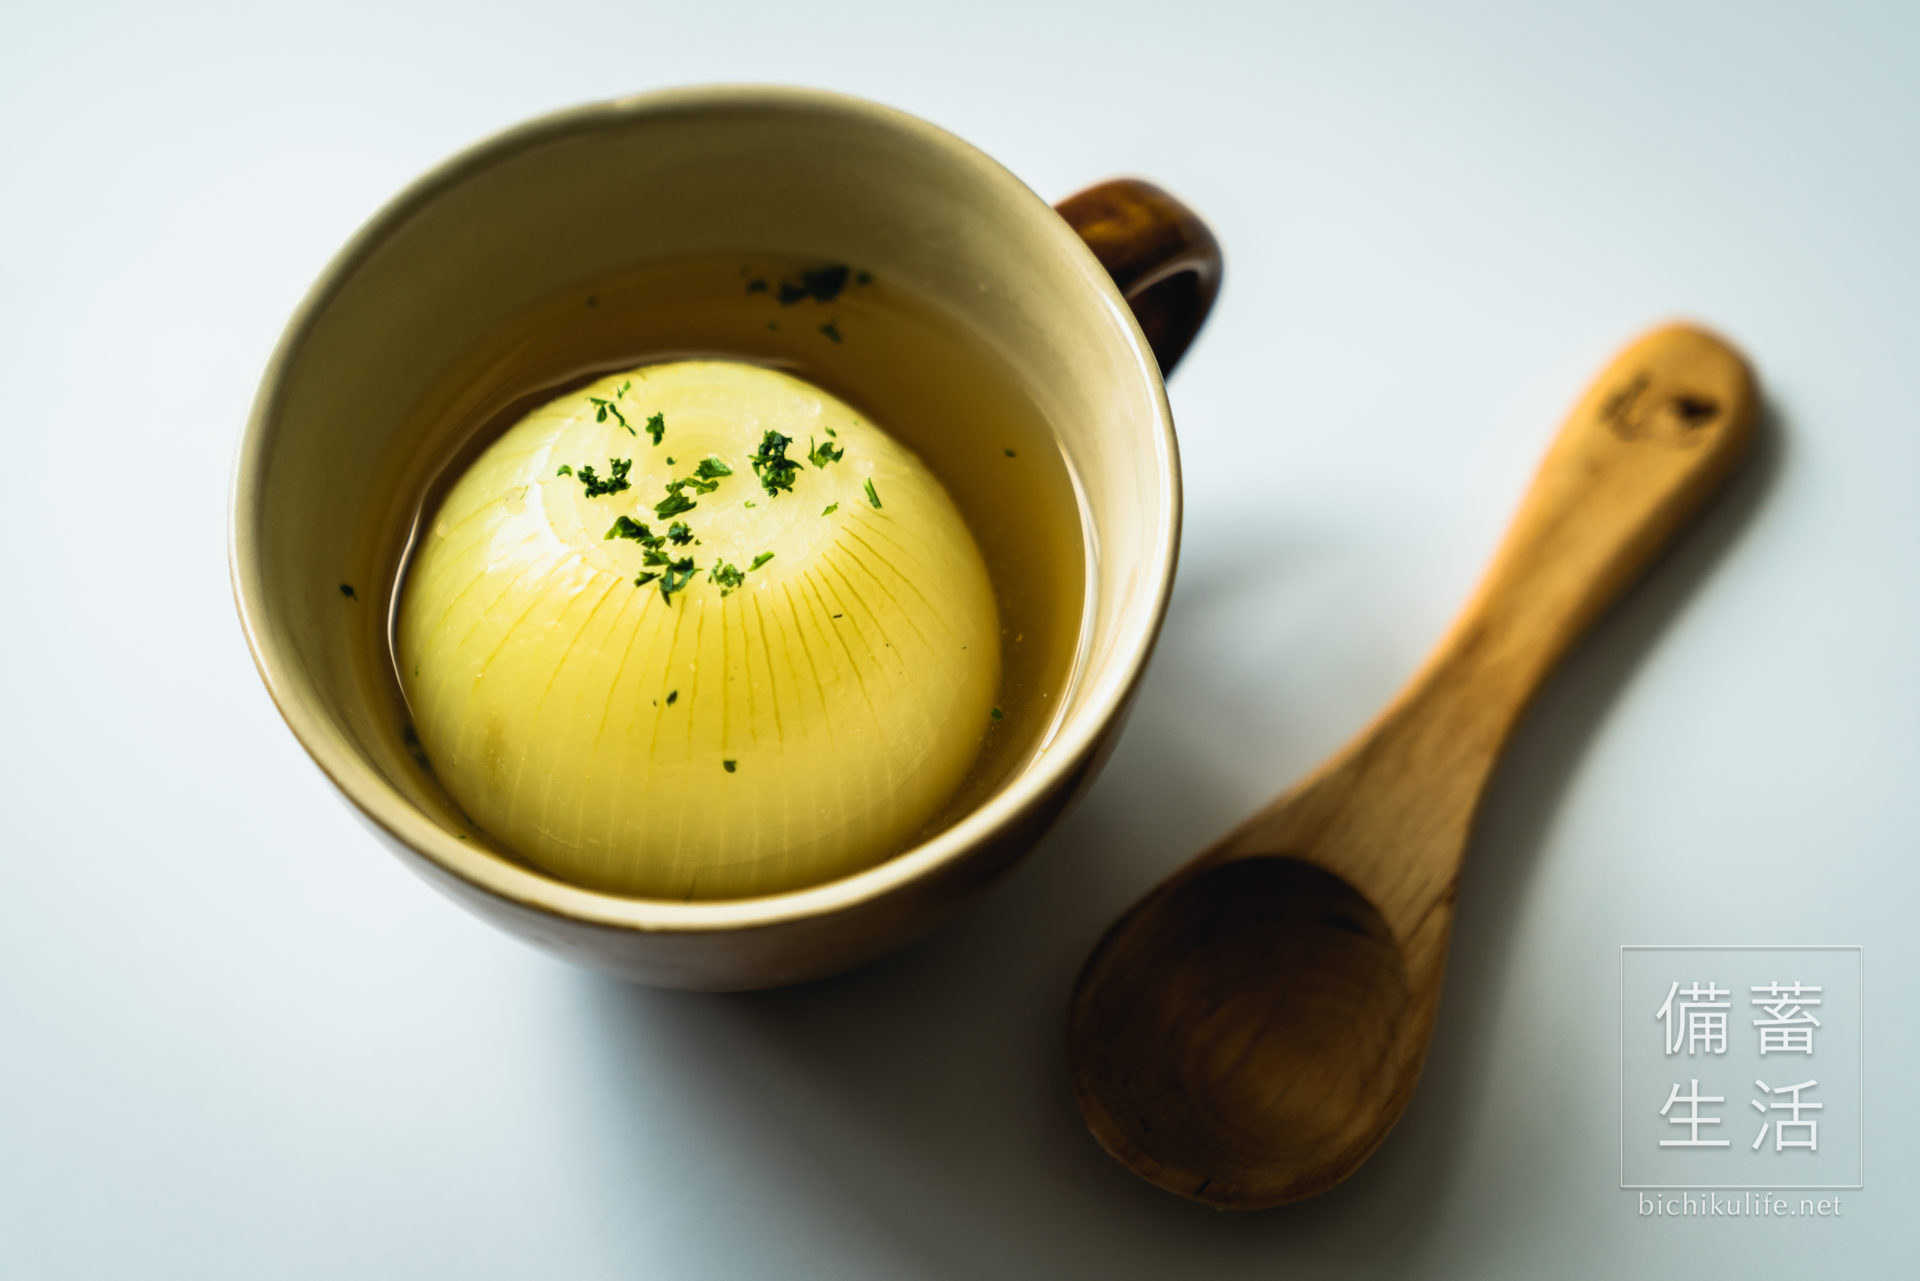 幻のたまねぎ 札幌黄のレシピ、丸ごと玉ねぎのスープ